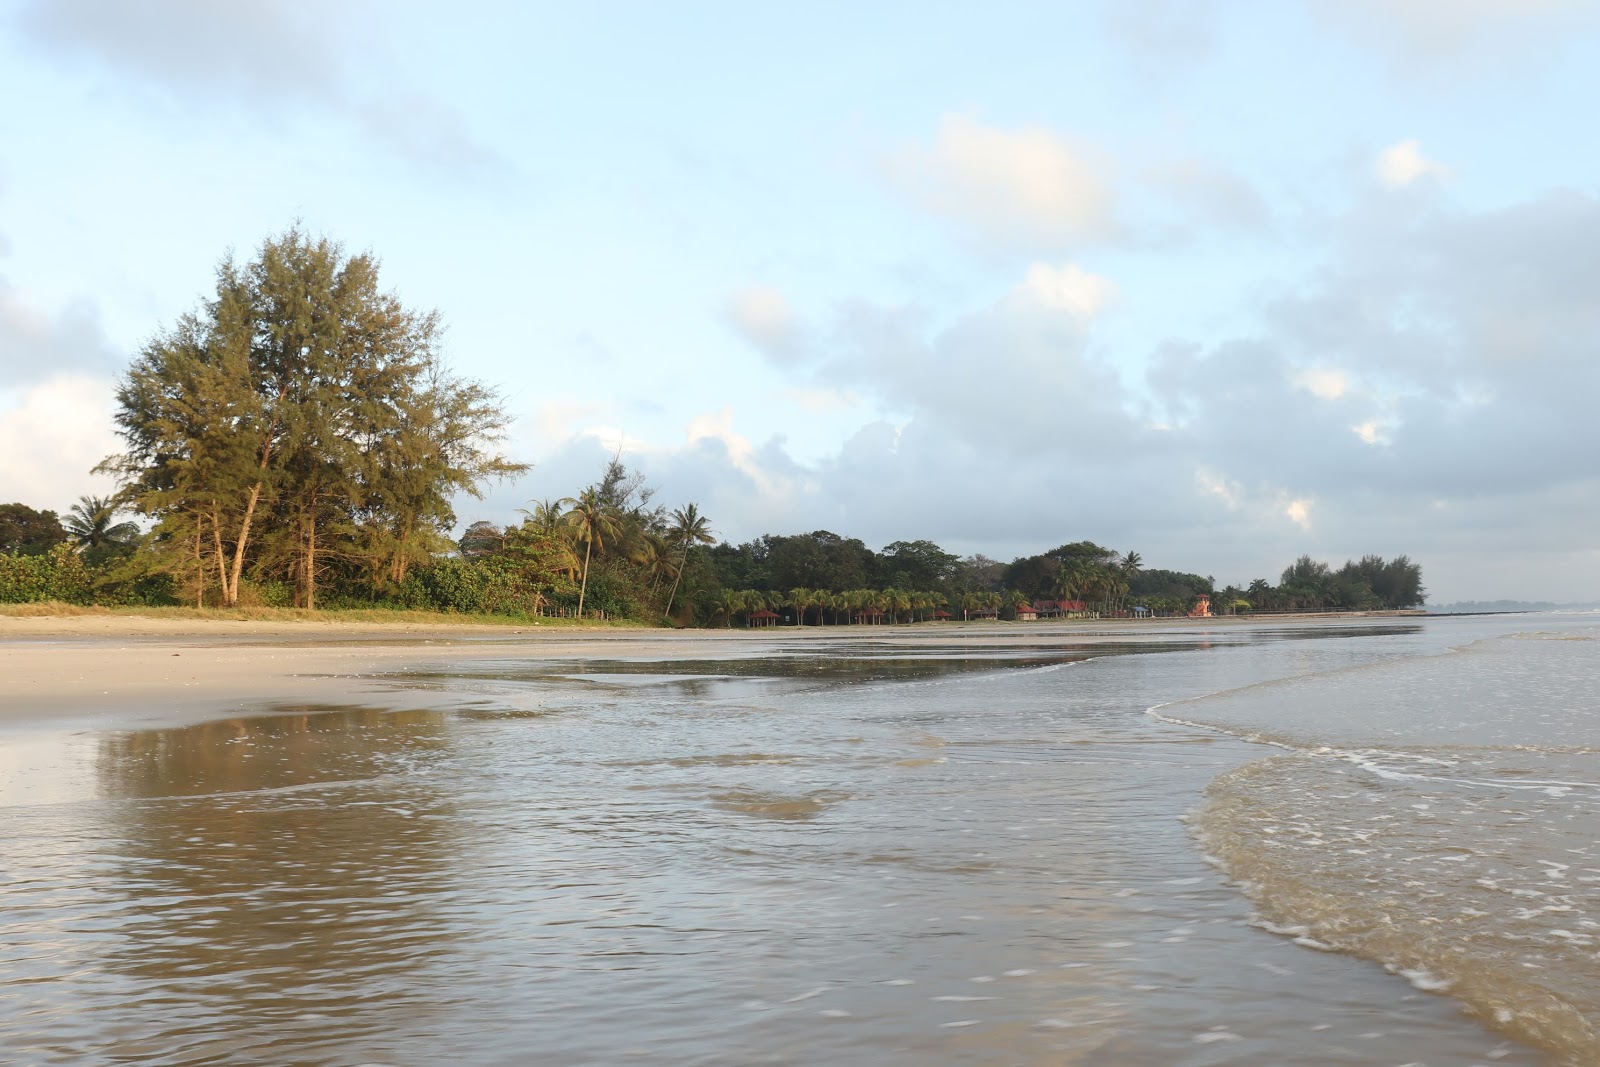 Foto de Beserah Beach - lugar popular entre os apreciadores de relaxamento